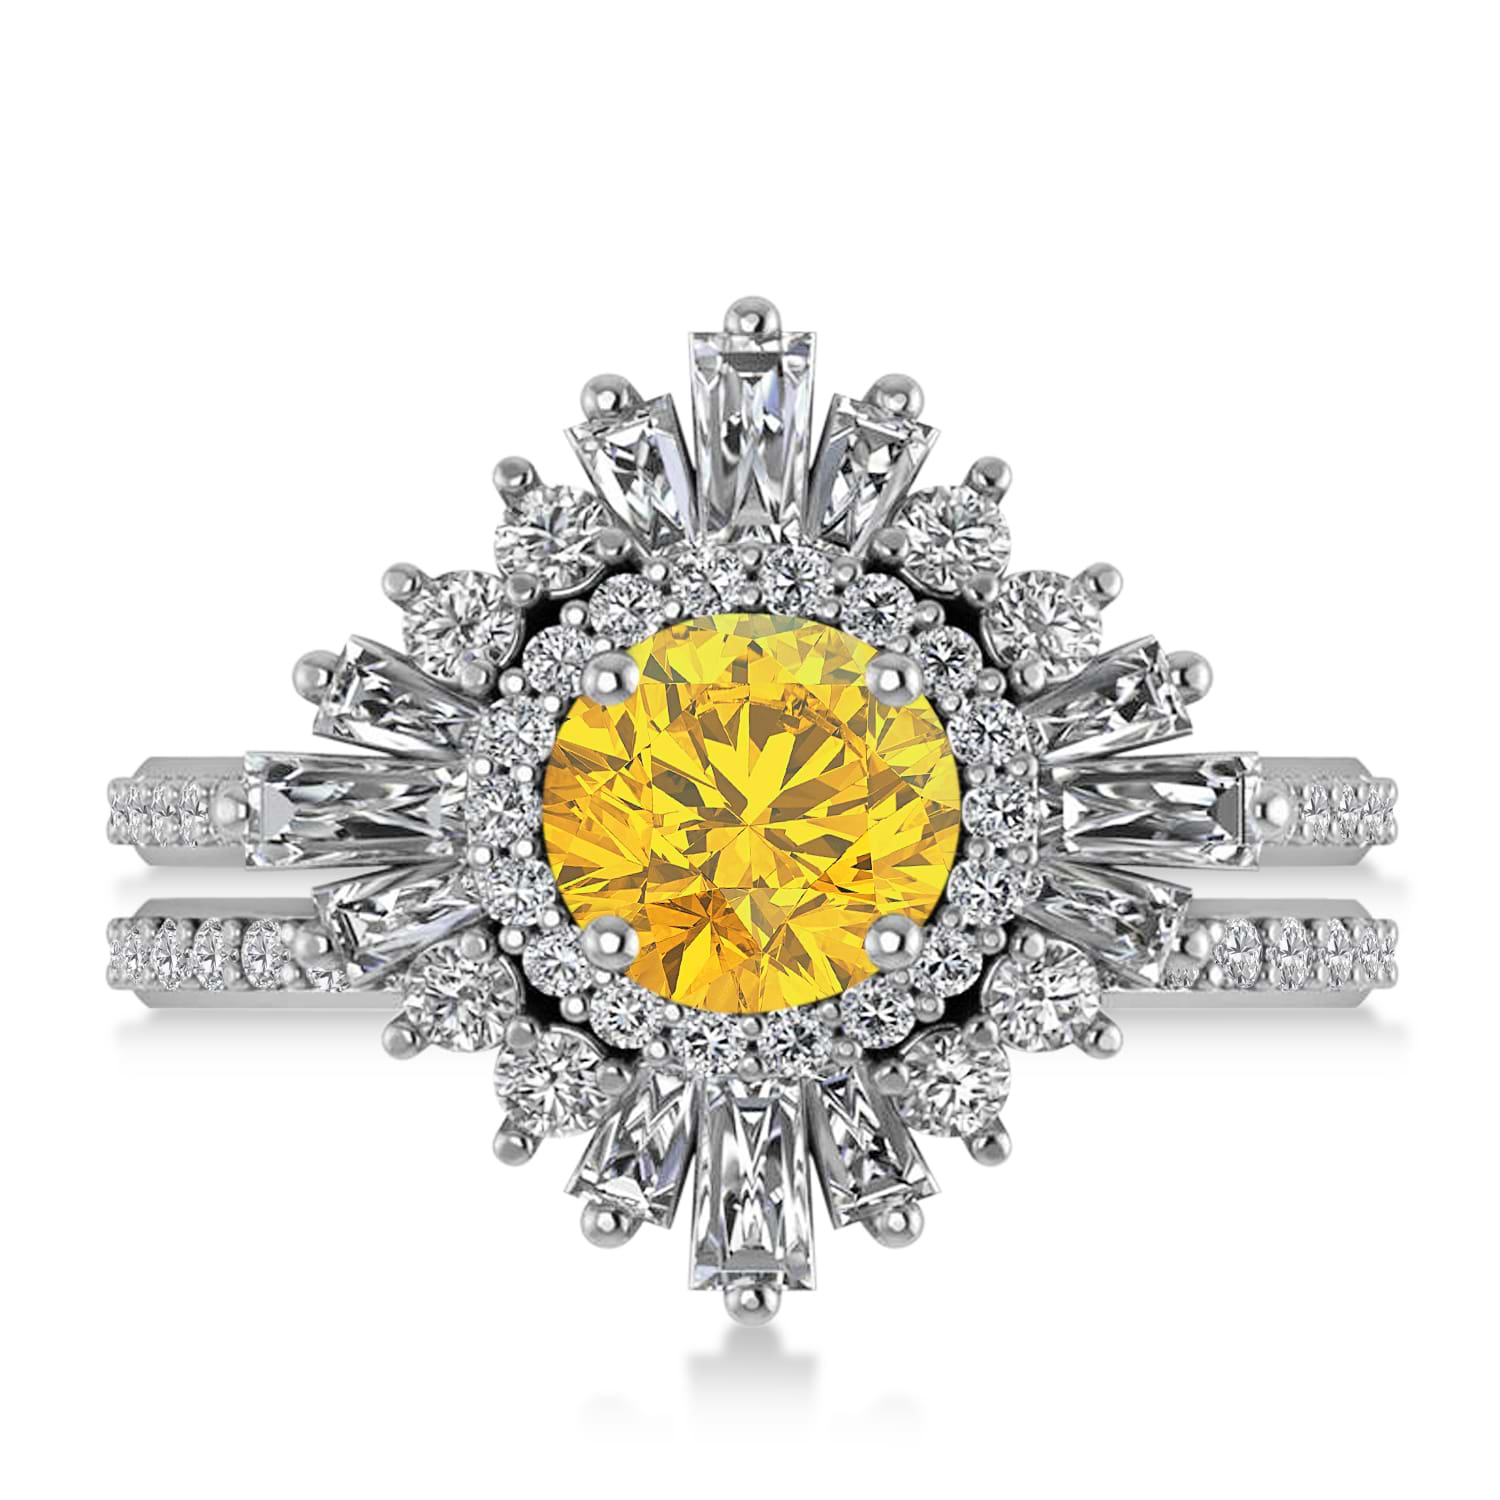 Yellow Sapphire & Diamond Ballerina Engagement Ring Palladium (2.74 ctw)